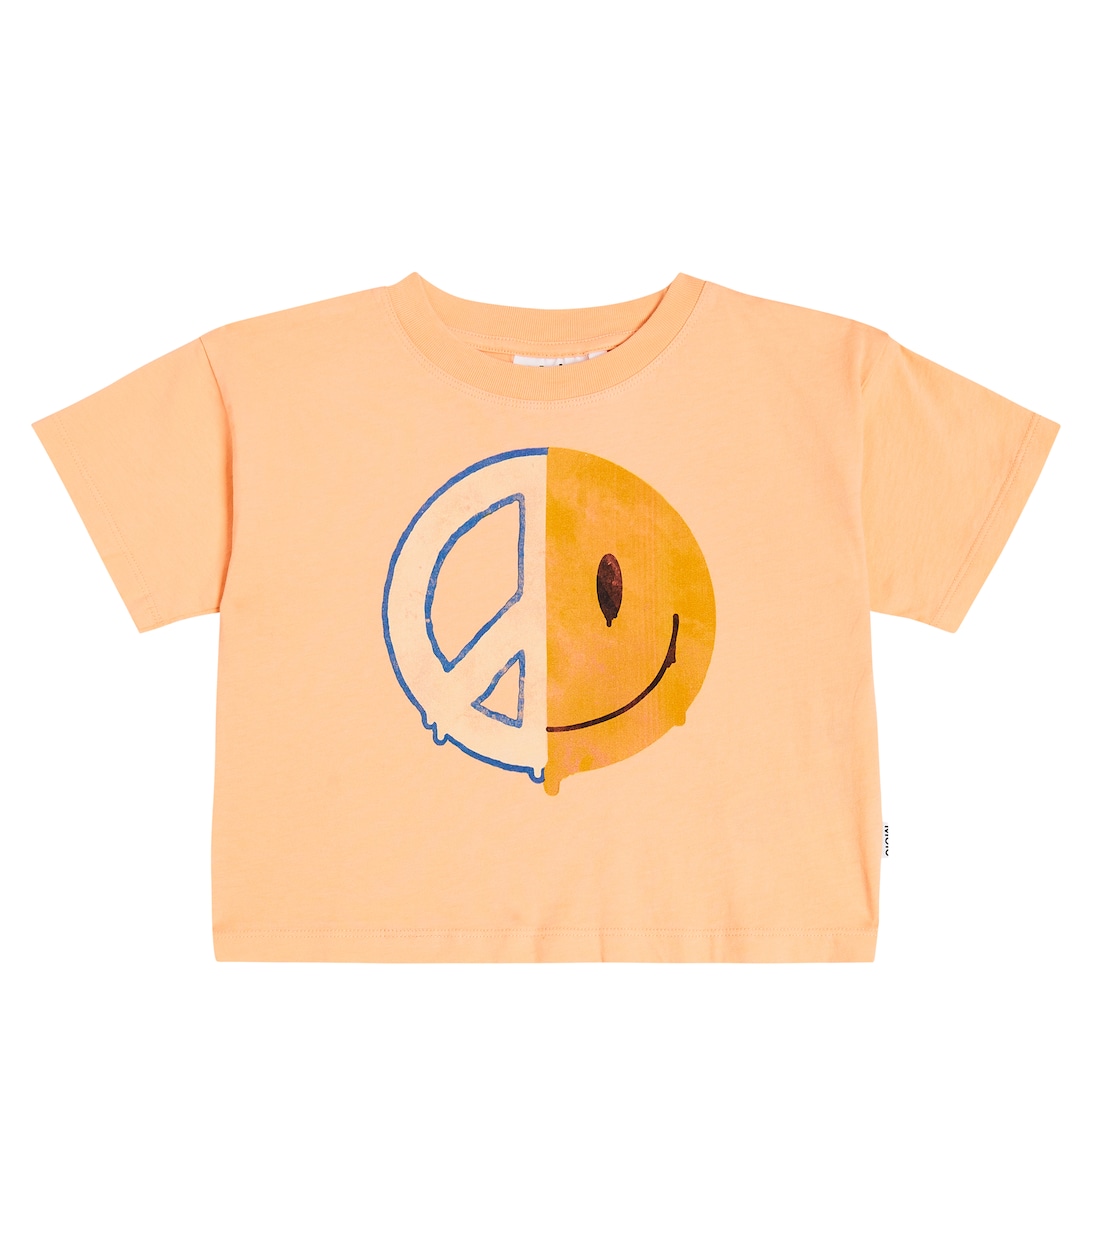 Хлопковая футболка с принтом Roxanna Molo, оранжевый футболка molo road оранжевый синий